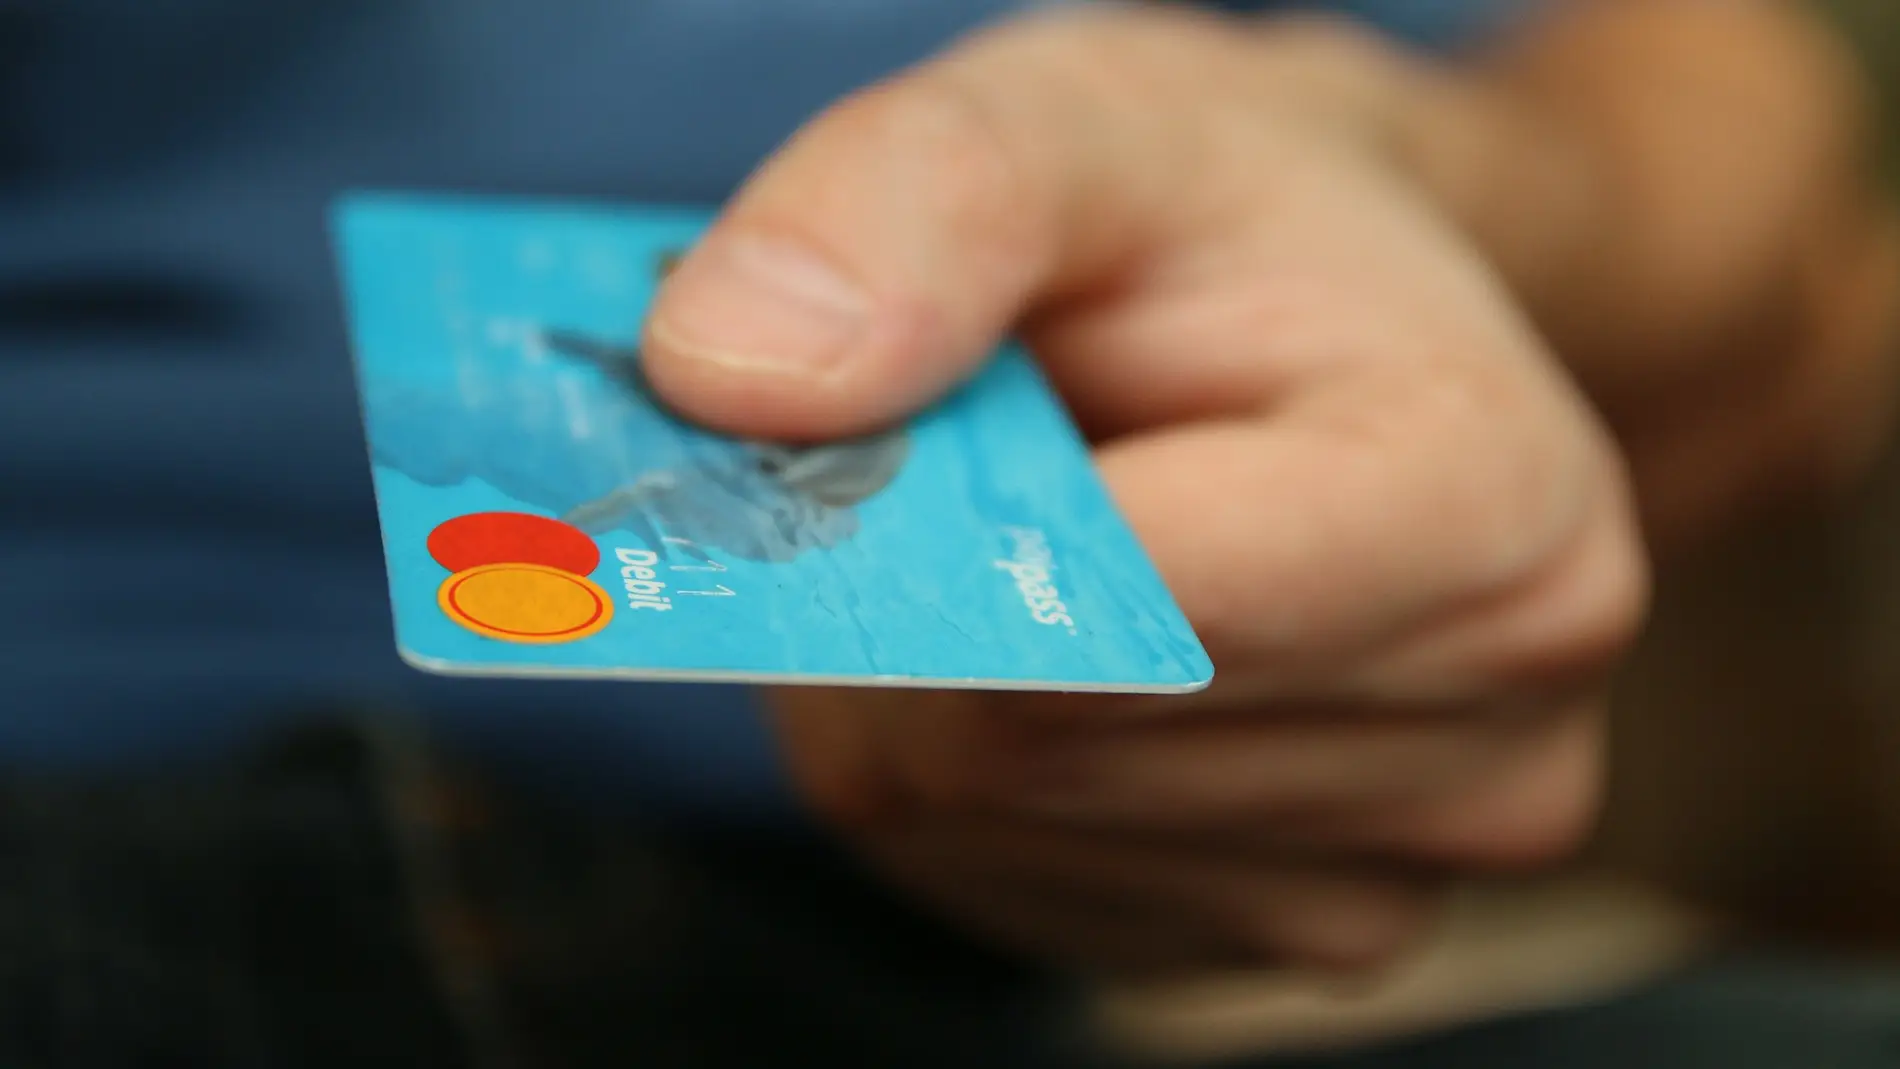 La novedosa forma de los ciberdelincuentes de robar los datos de las tarjetas de crédito en nuestras compras online